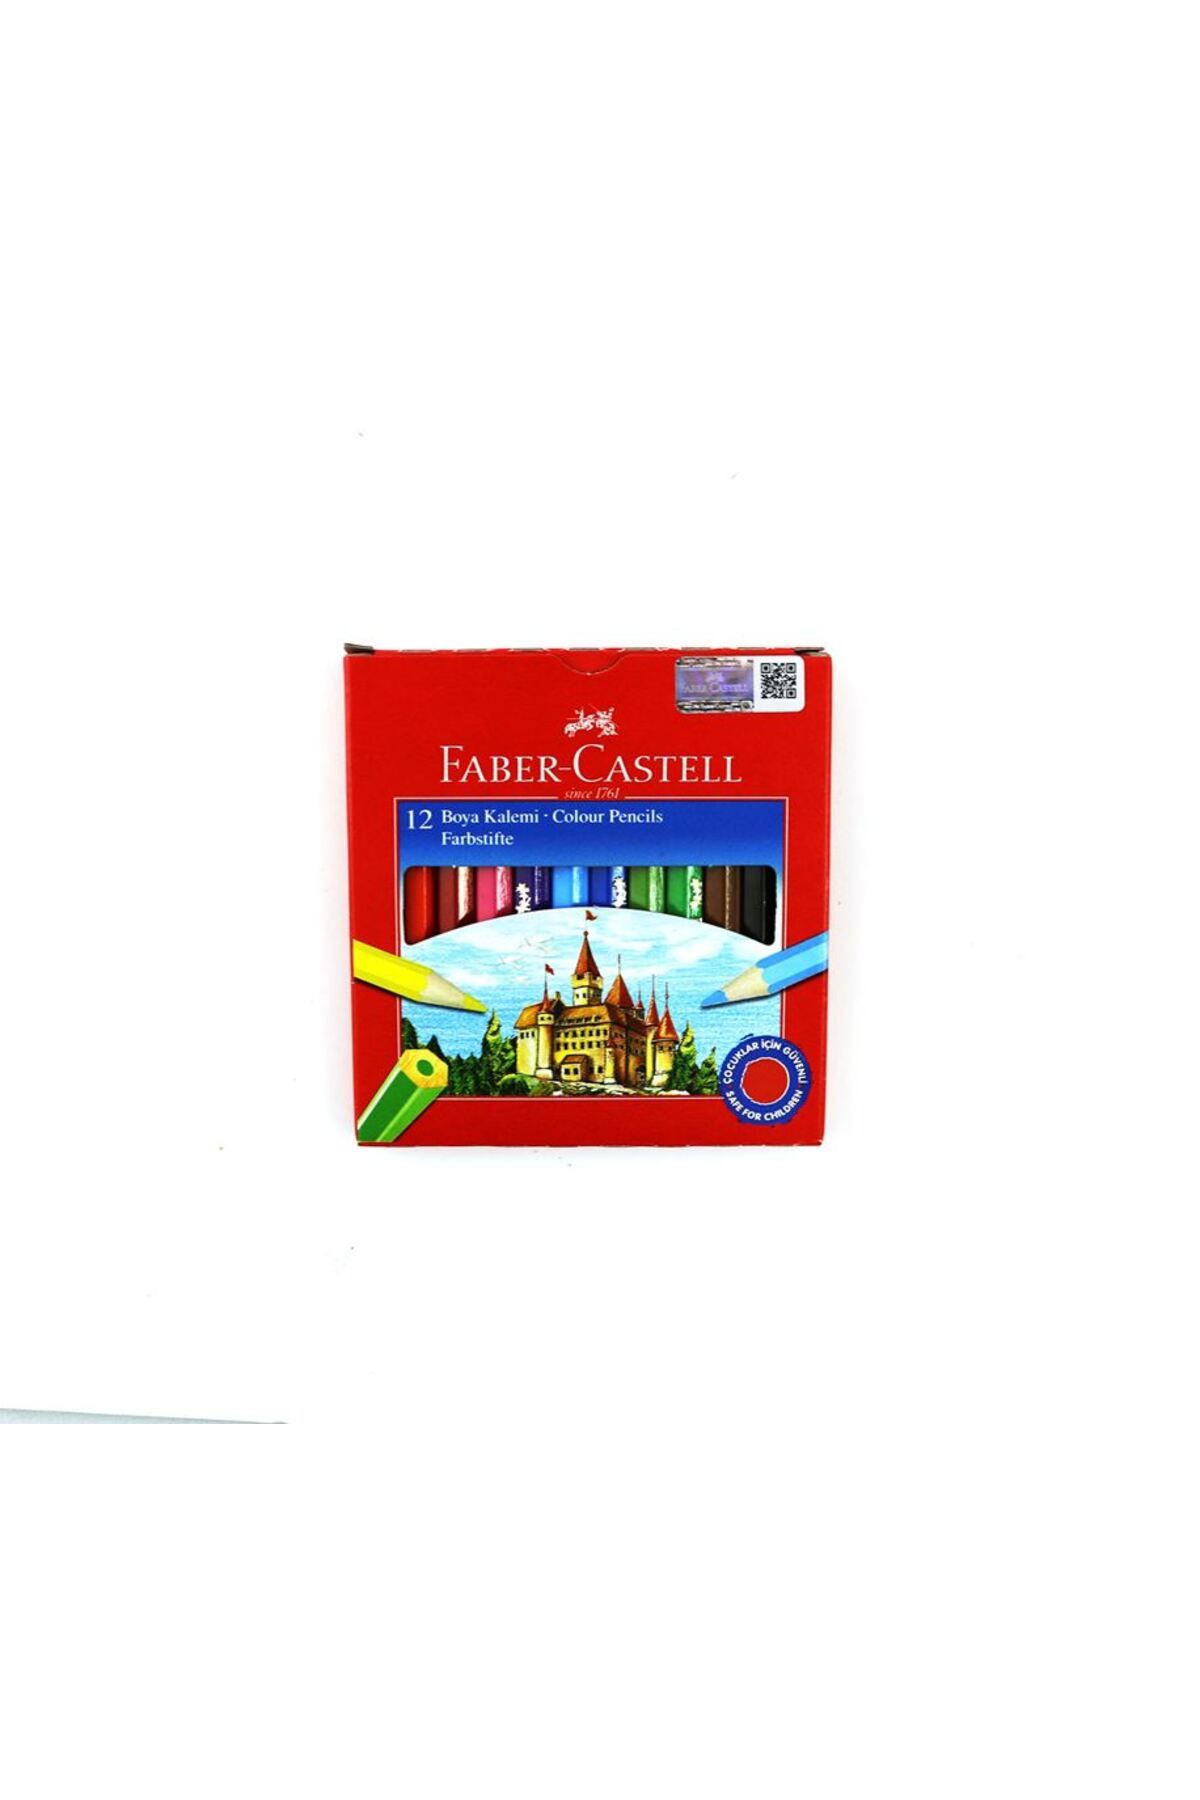 Faber Castell Karton Kutu Boya Kalemi 12 Renk Yarım Boy